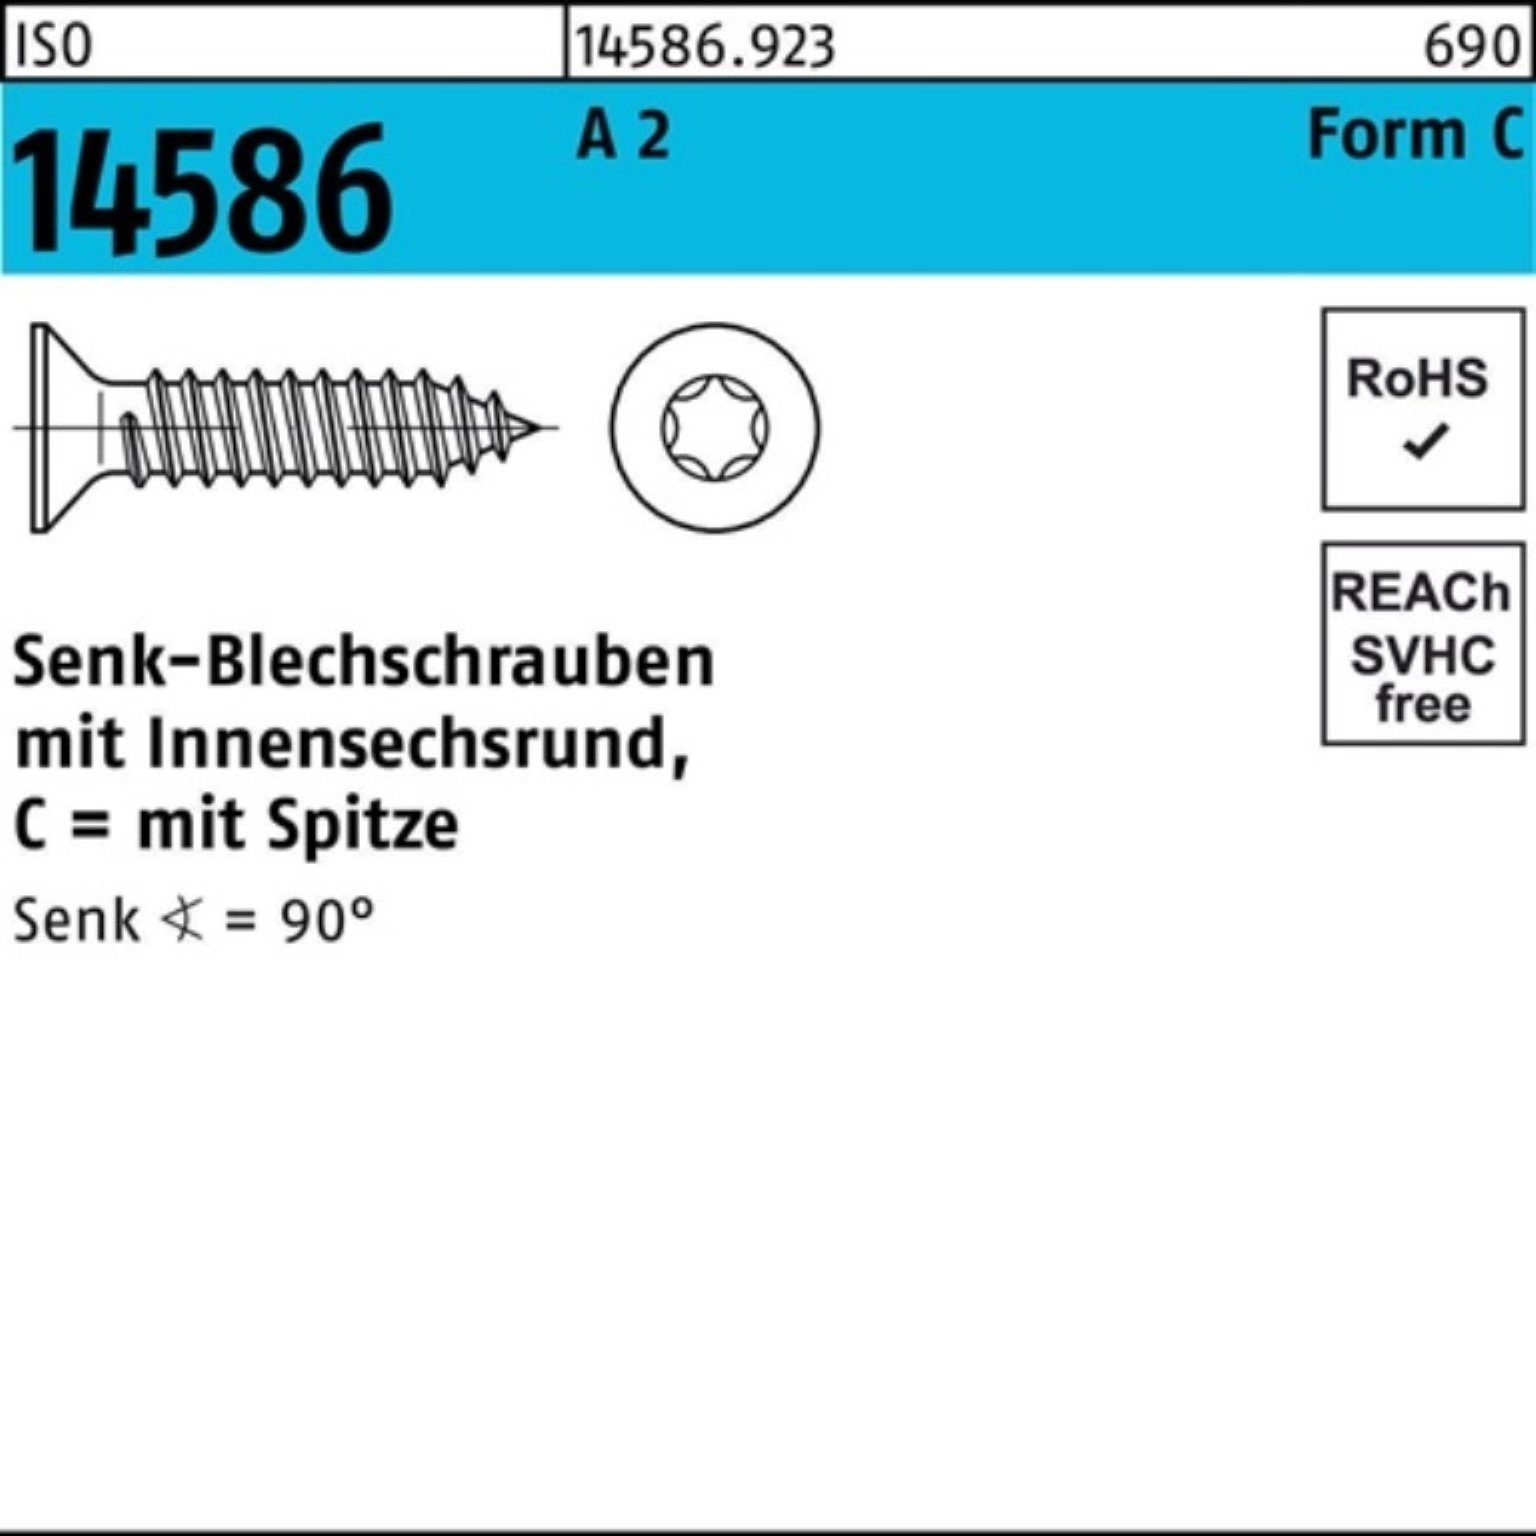 Reyher Schraube 500er ISR/Spitze 14586 A Senkblechschraube 5 4,8x T25 -C 22 Pack ISO 2